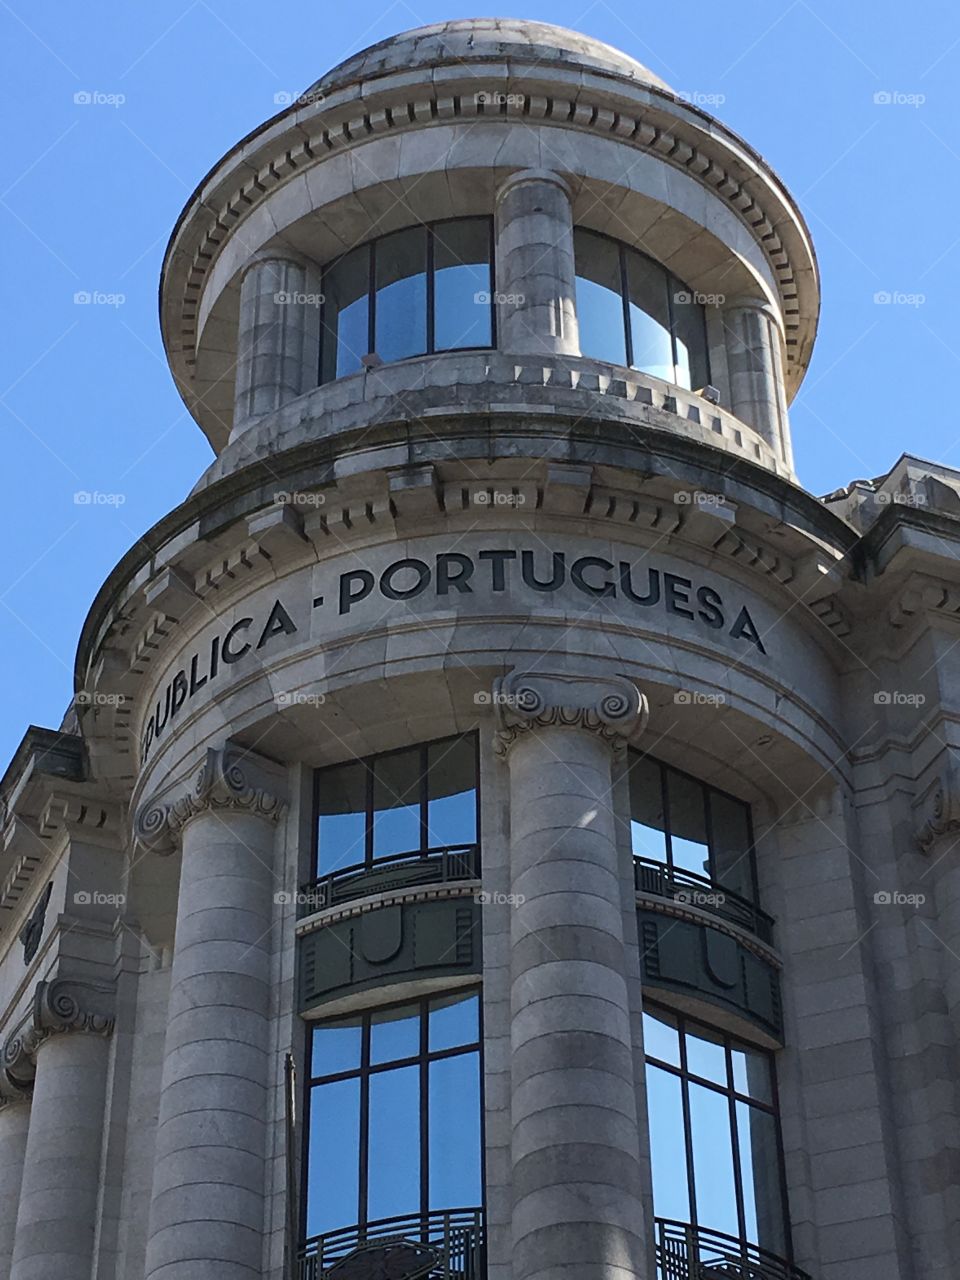 Porto space